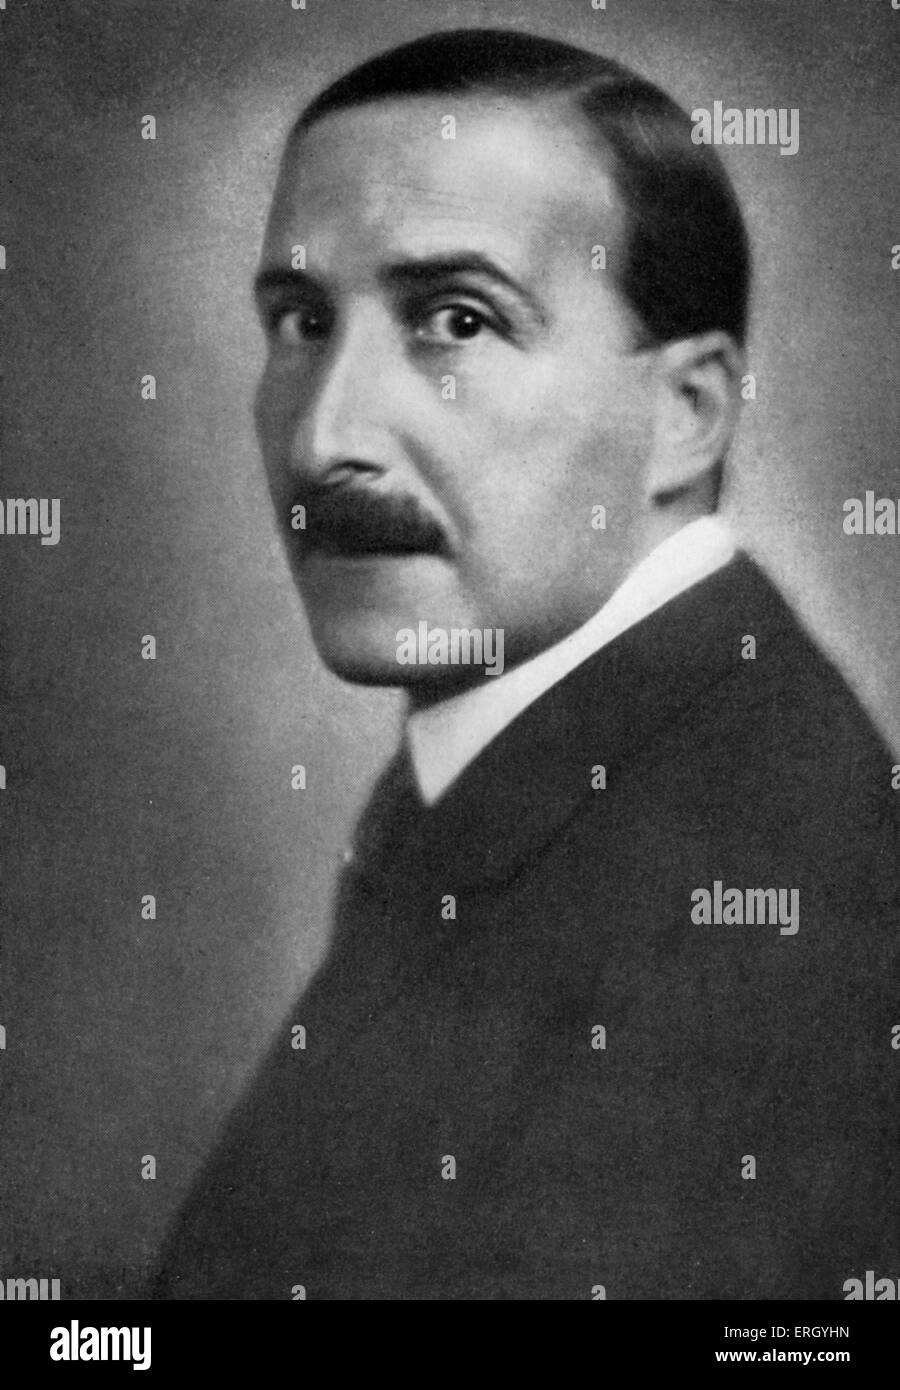 Stefan Zweig im Jahre 1940. Österreichischer Schriftsteller, Dramatiker, Journalist und Biograf. 28. November 1881 - 22. Februar 1942. Stockfoto